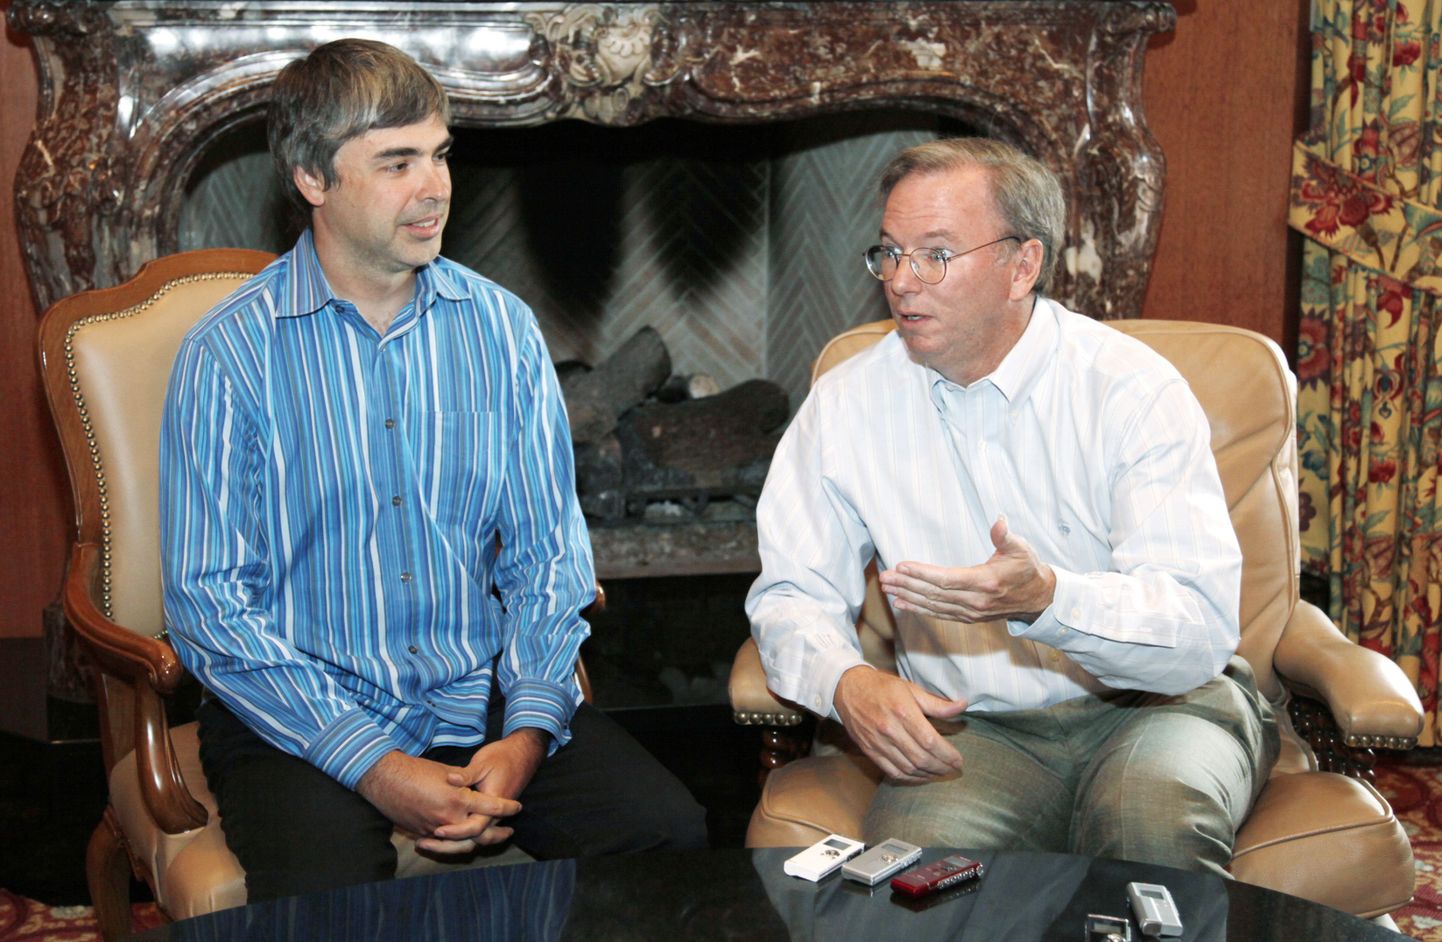 Google'i asutaja ja tegevjuht Larry Page (vasakul) ning nõukogu esimees Eric Schmidt.